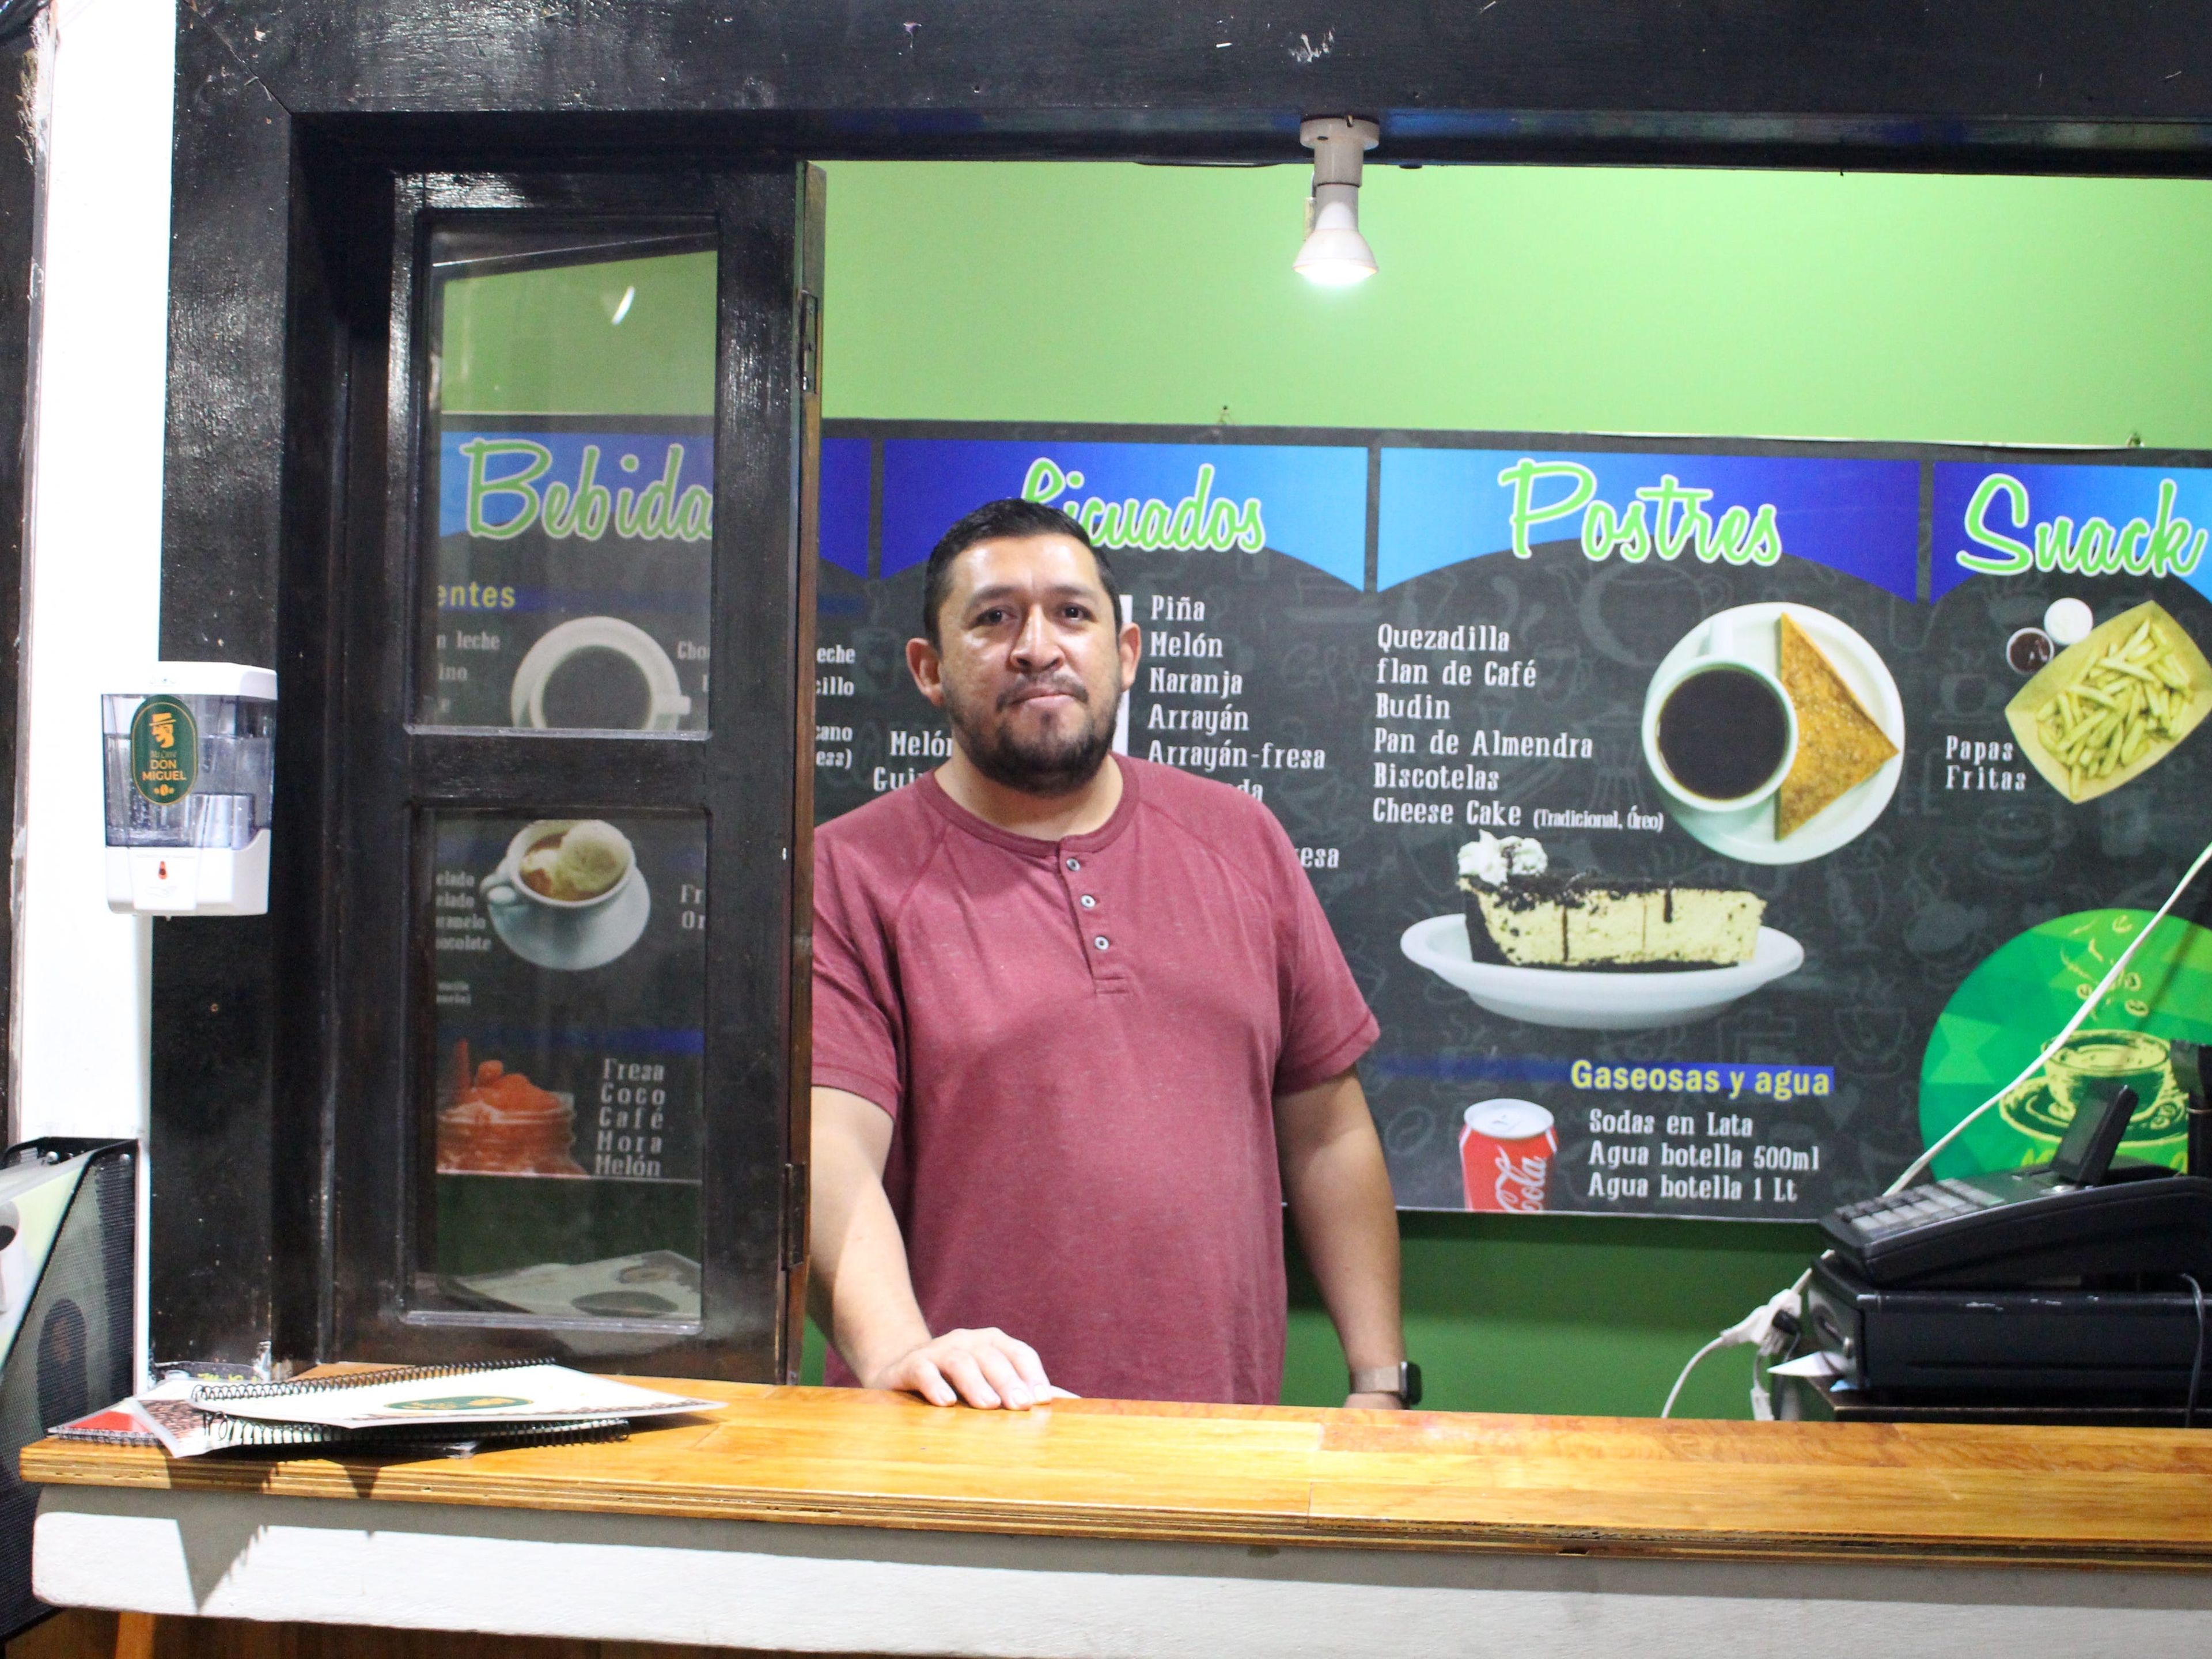 El dueño de la cafetería, Wilber Herrera, intentó aceptar pagos con bitcoins en su café en Ataco, pero no pudo hacer que la aplicación funcionara. Anna-Catherine Brigida